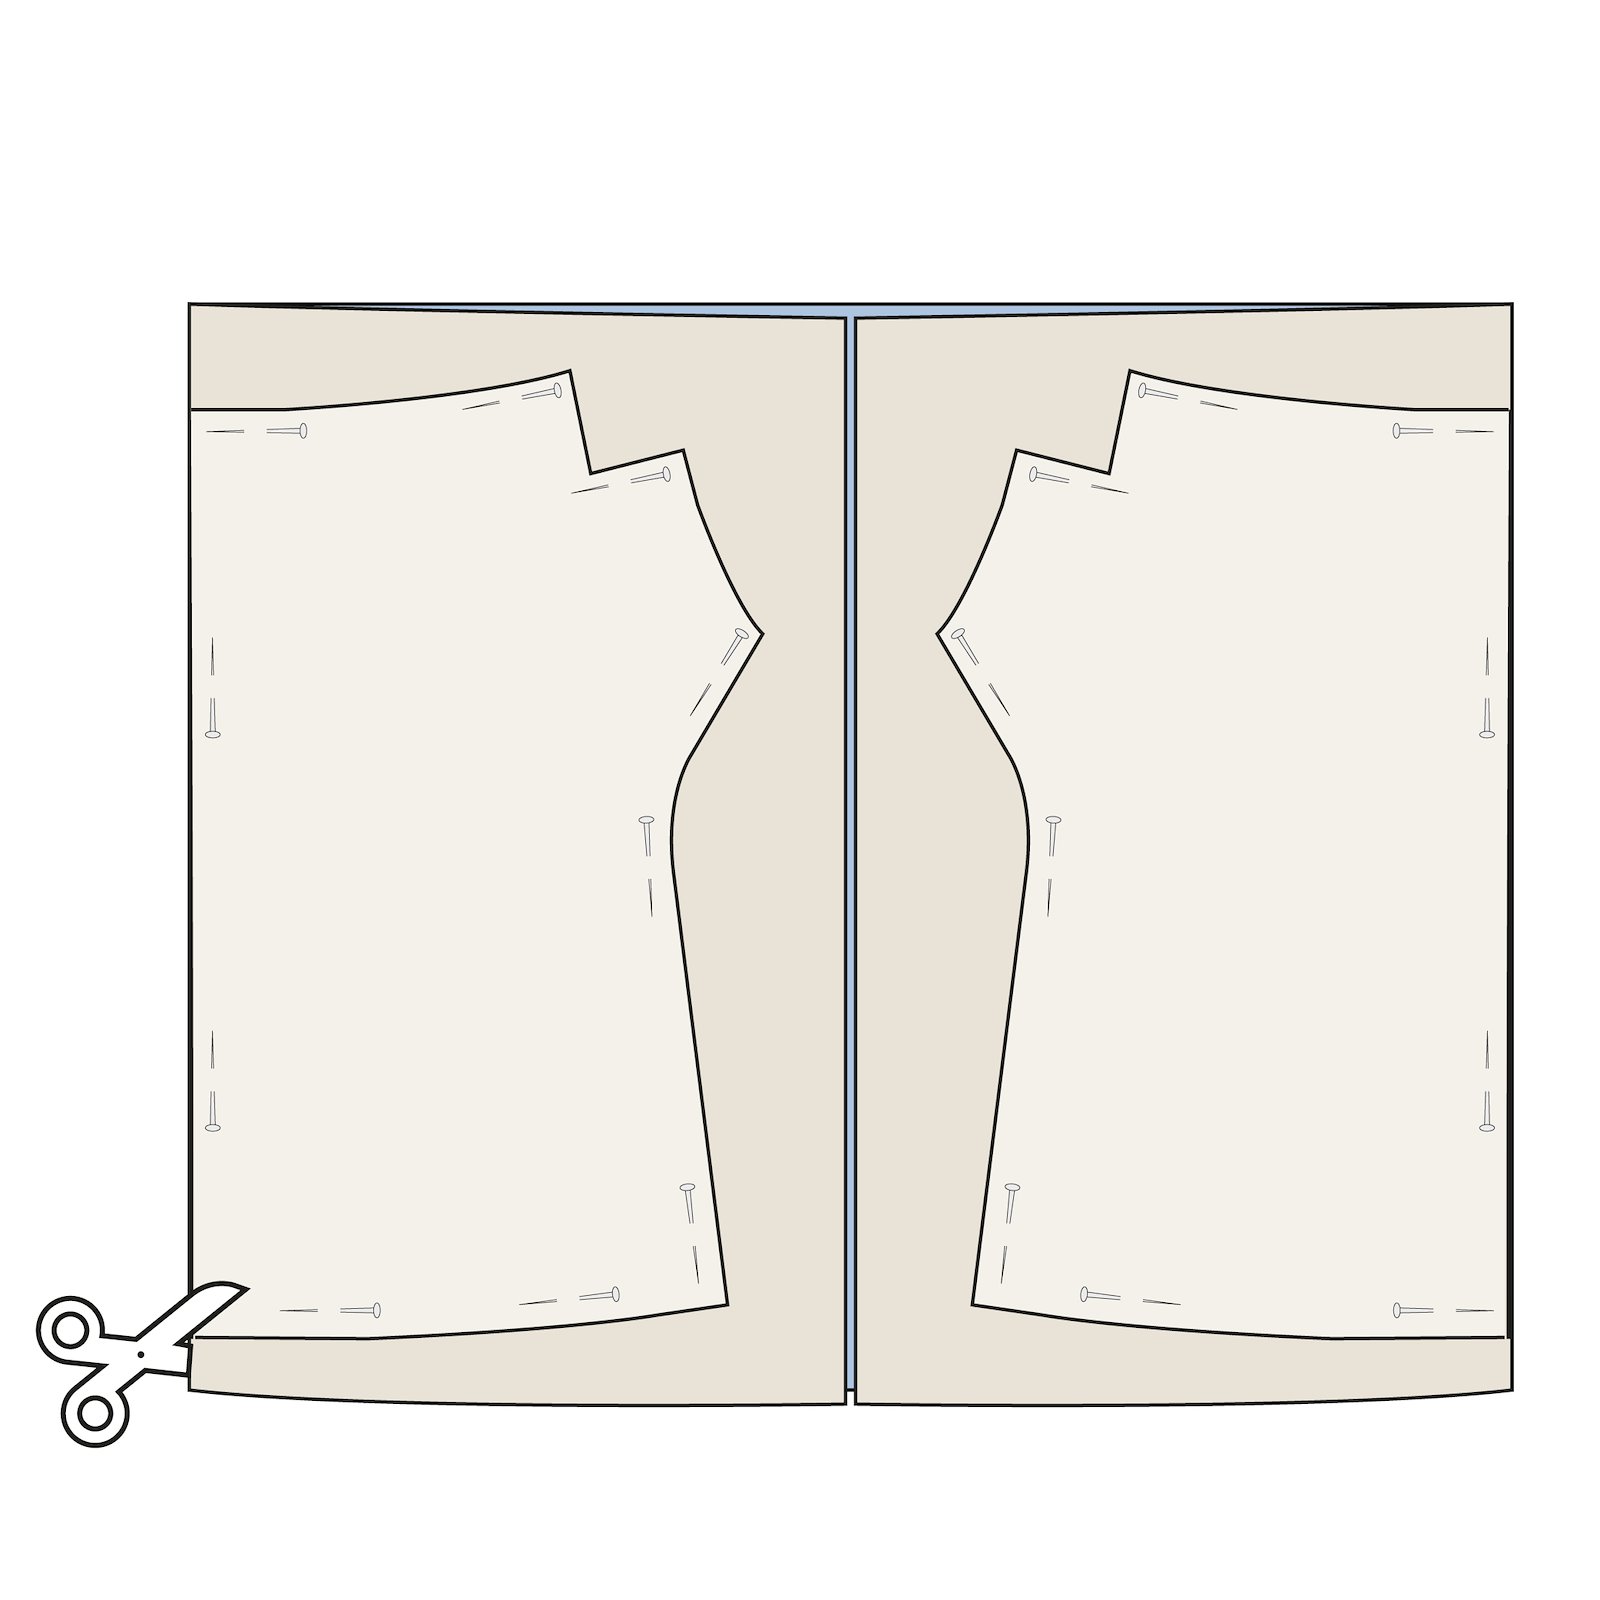 Sewing pattern: Wrist Warmers DIY2314_step2.jpg